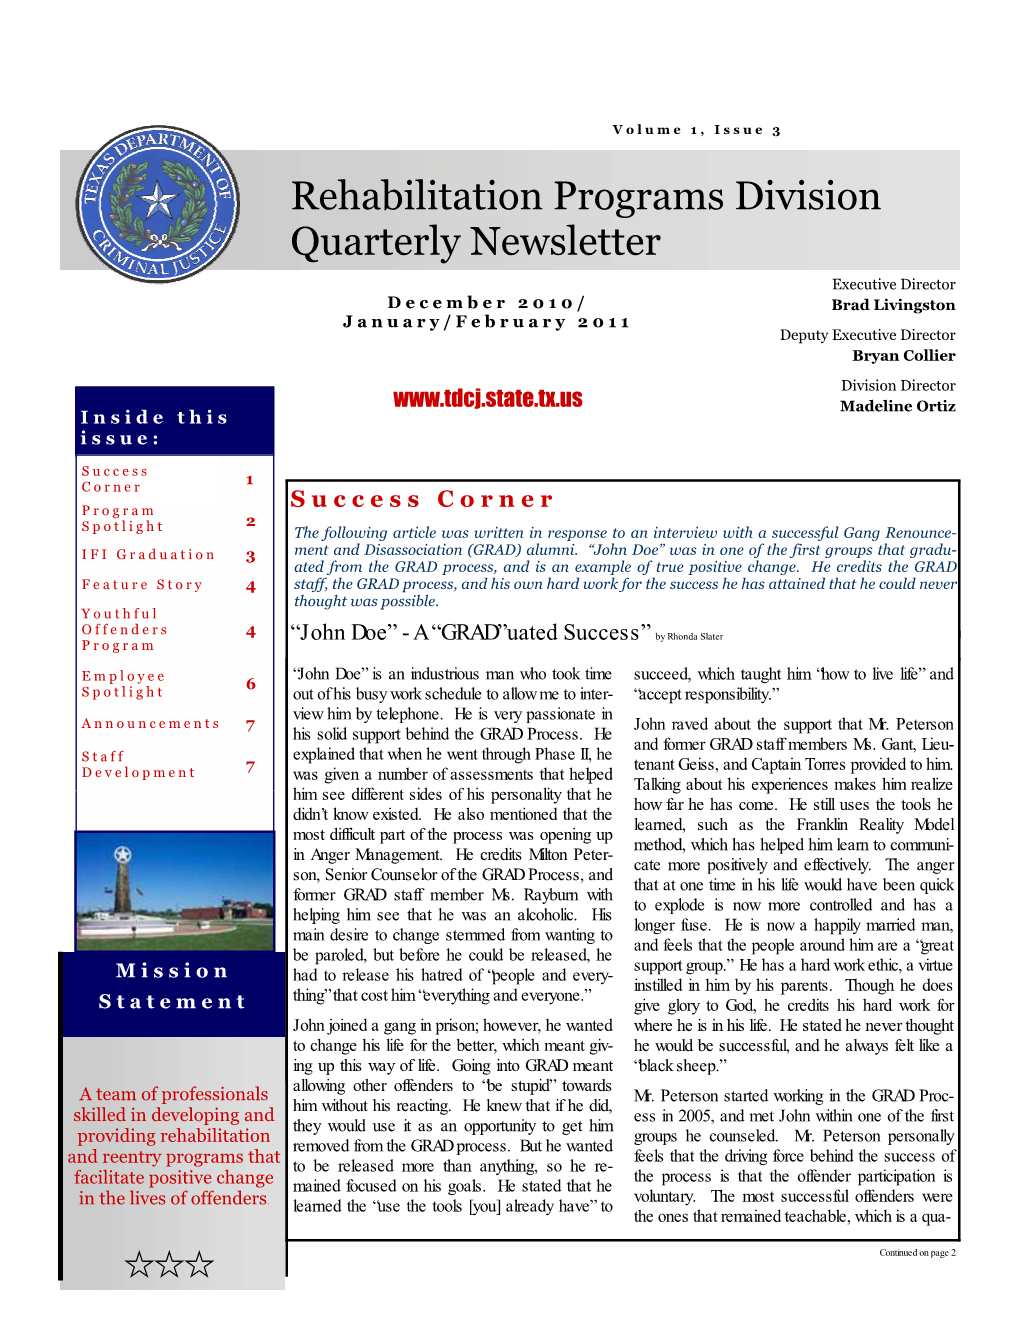 Rehabilitation Programs Division Quarterly Newsletter; Volume 1, Issue 3; December 2010/January-February 2011